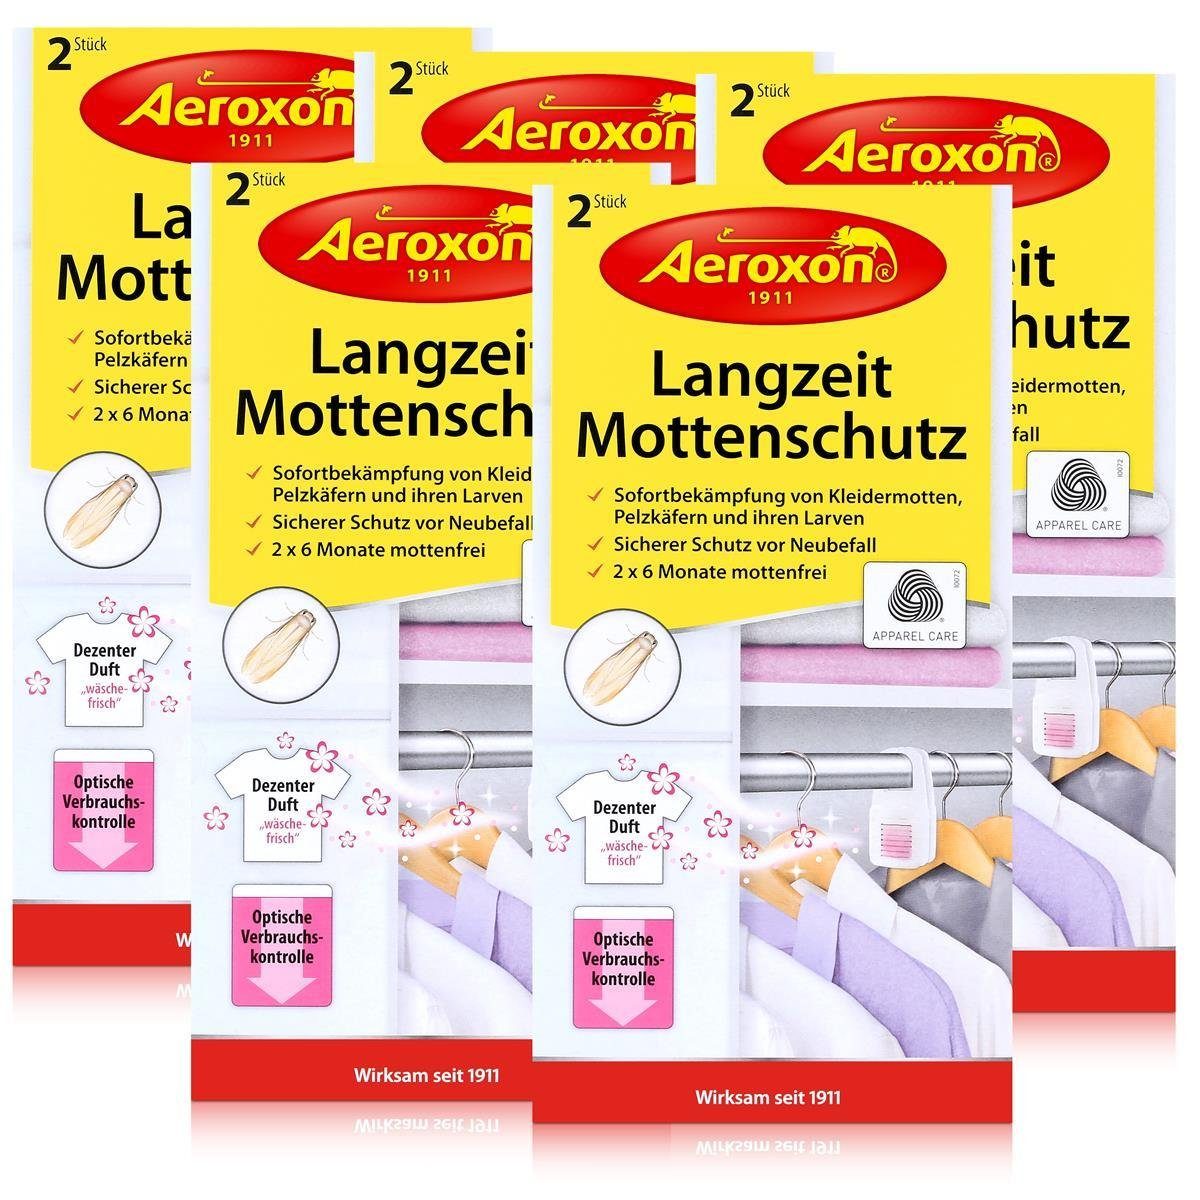 Aeroxon Insektenfalle Aeroxon Langzeit Mottenschutz 2 Stück - Bekämpft Kleidermotten (5er Pa